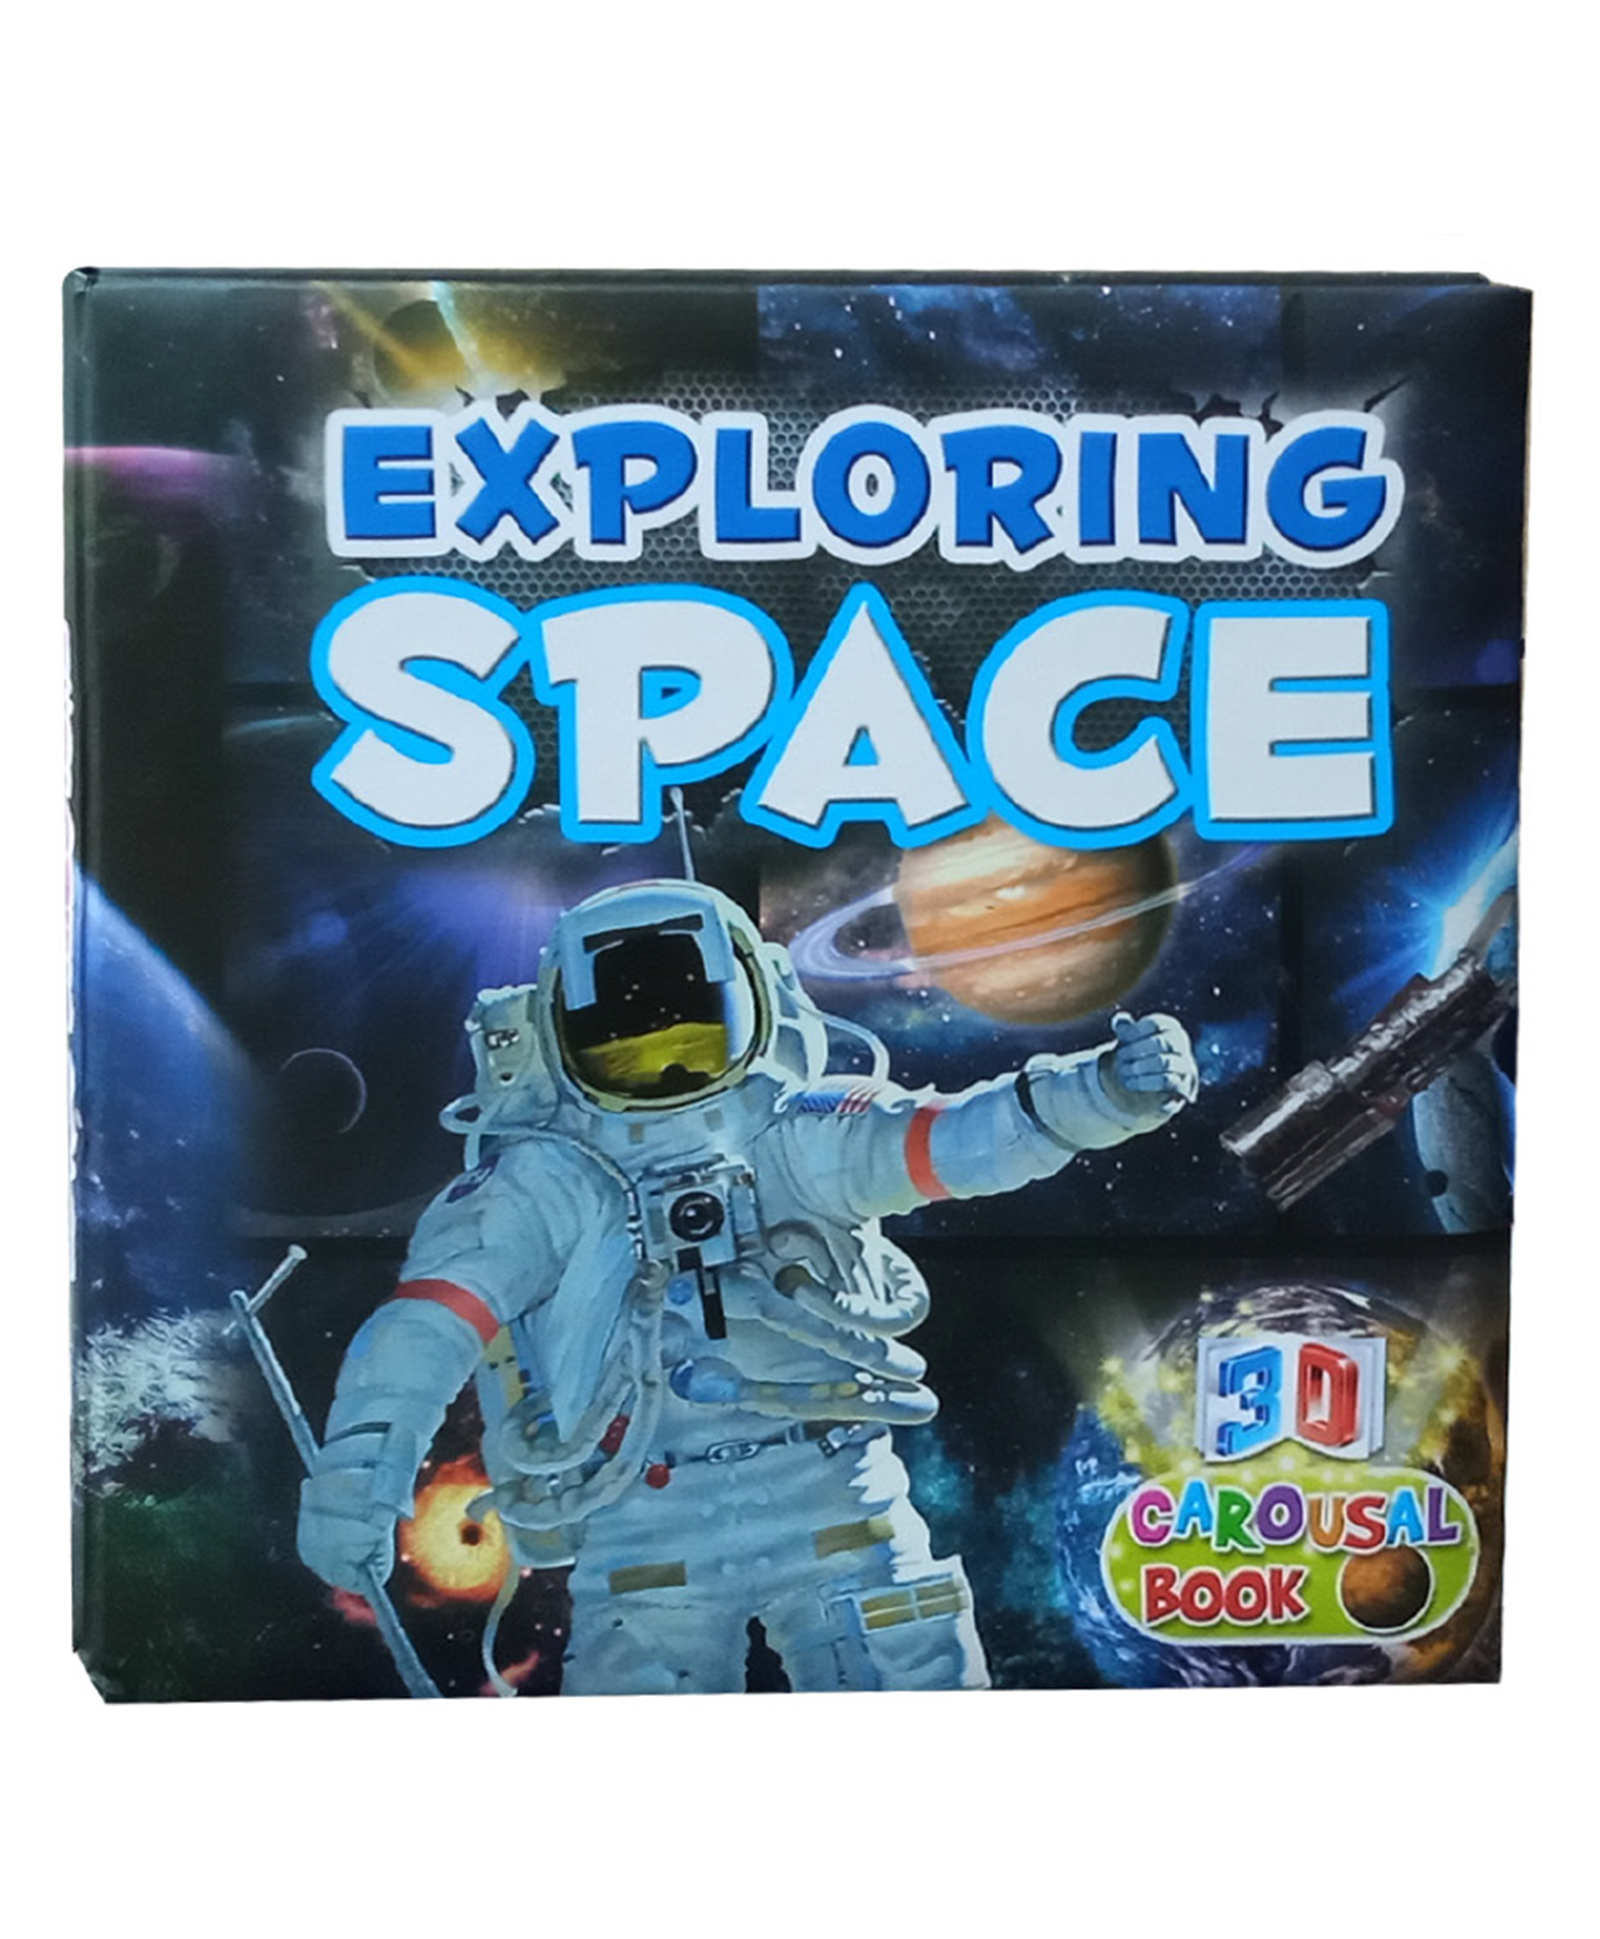 Exploring Space Amazing 3D Carosol book